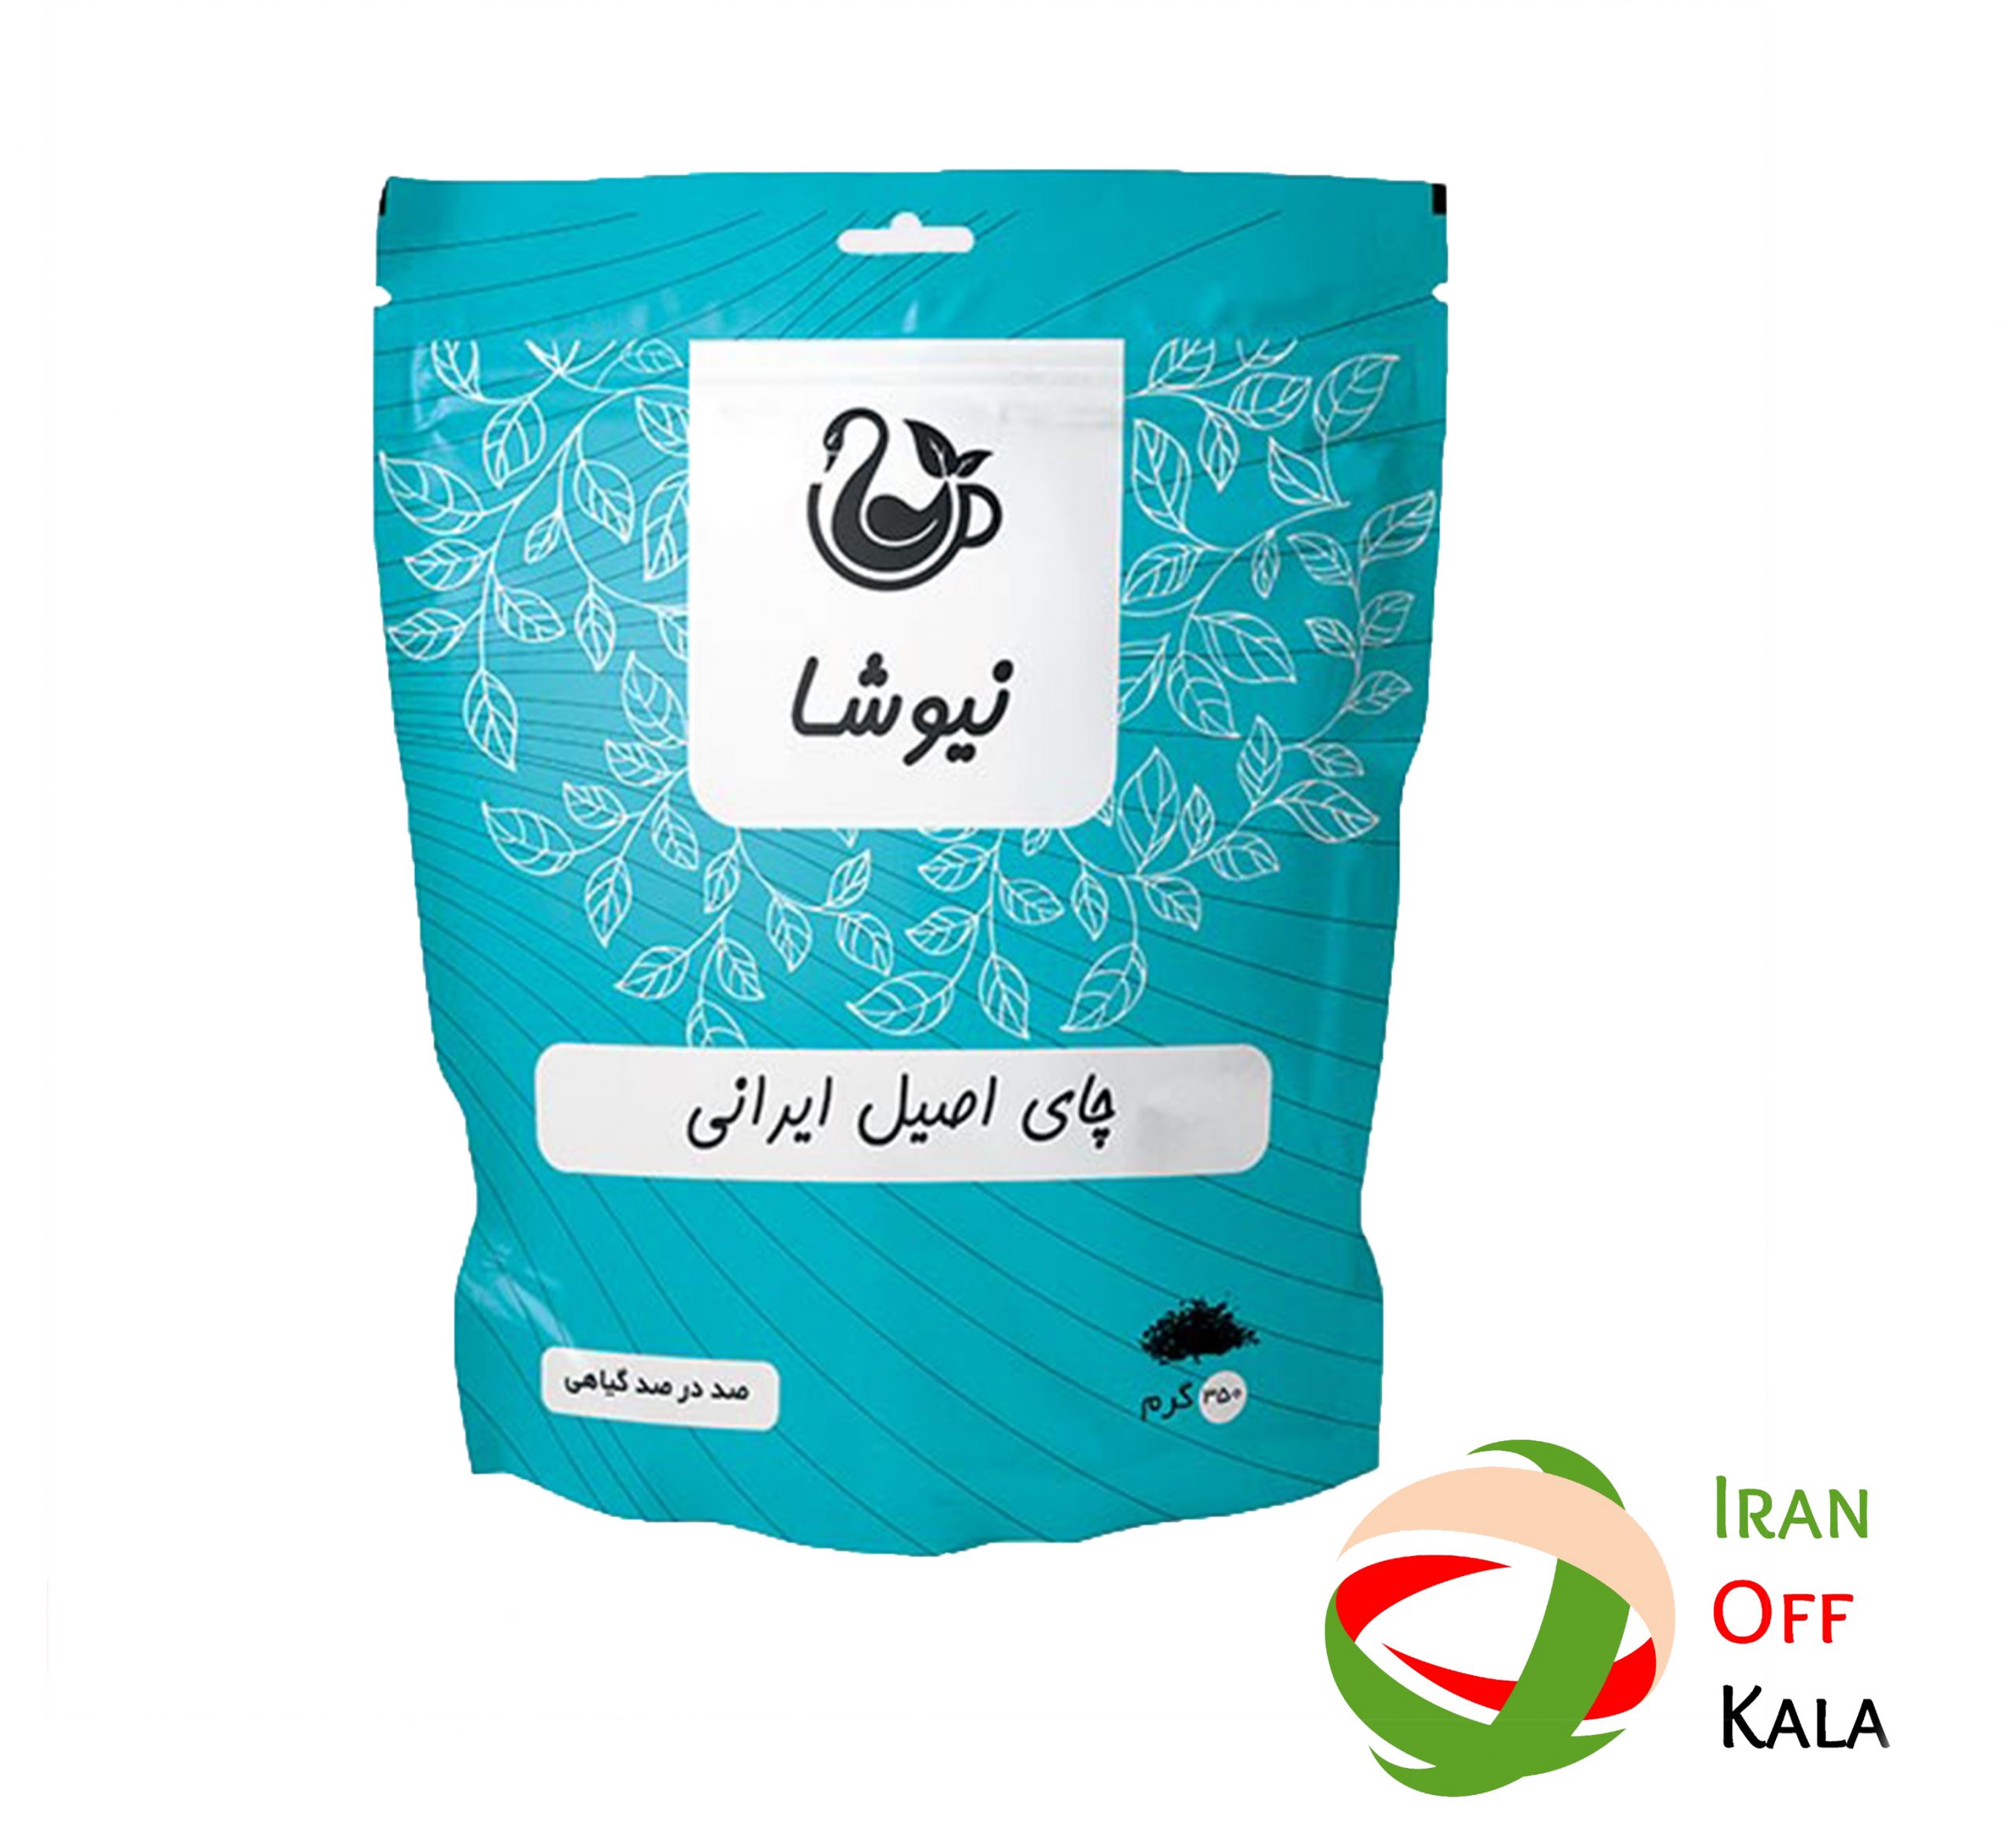  چای اصیل ایرانی نیوشا 350 گرمی ا Niusha Original Iranian Tea 350g